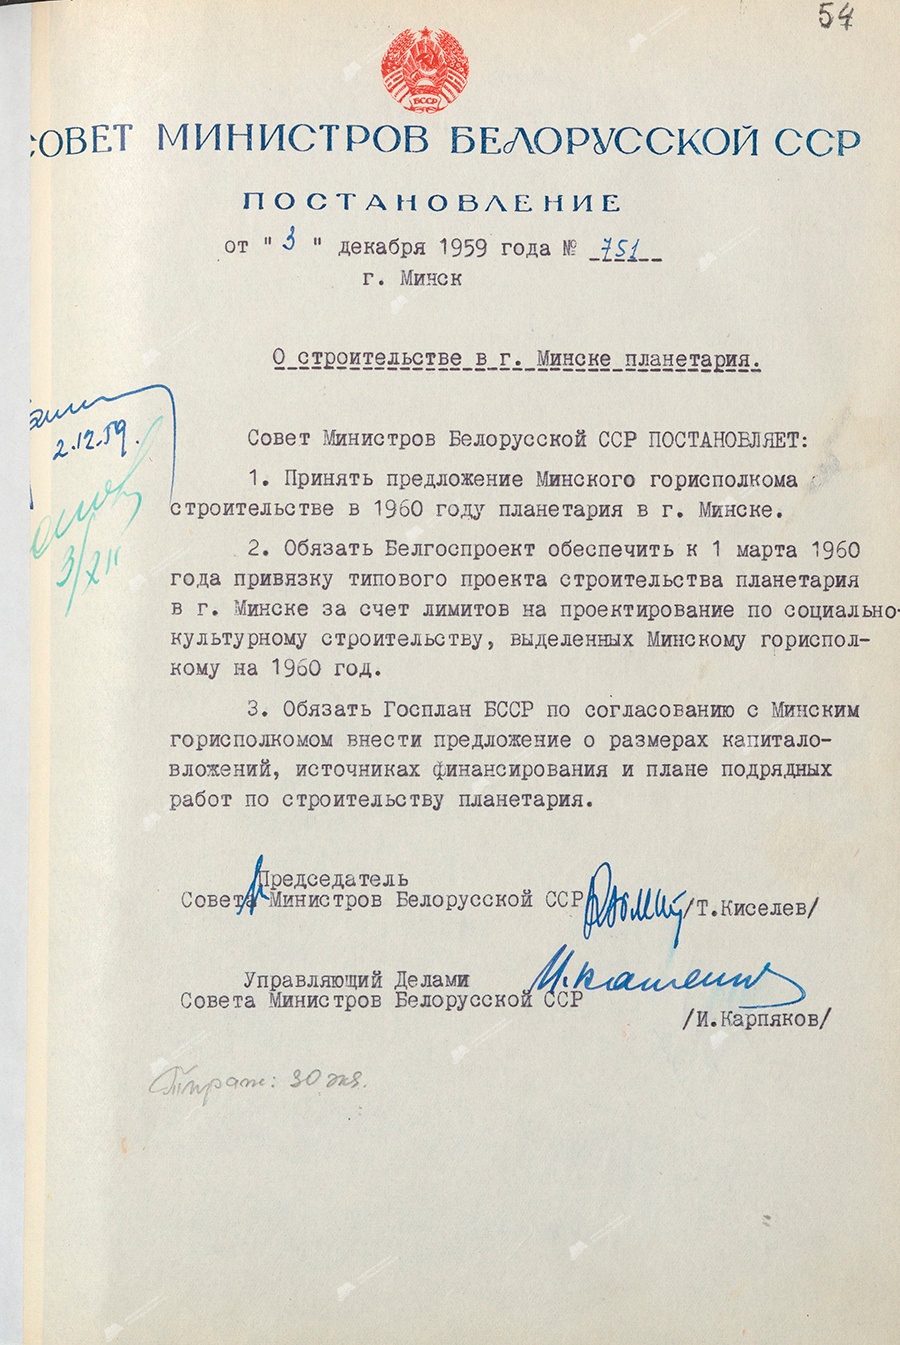 Beschluss Nr. 751 des Ministerrats der BSSR «Über den Bau eines Planetariums in Minsk»-стр. 0